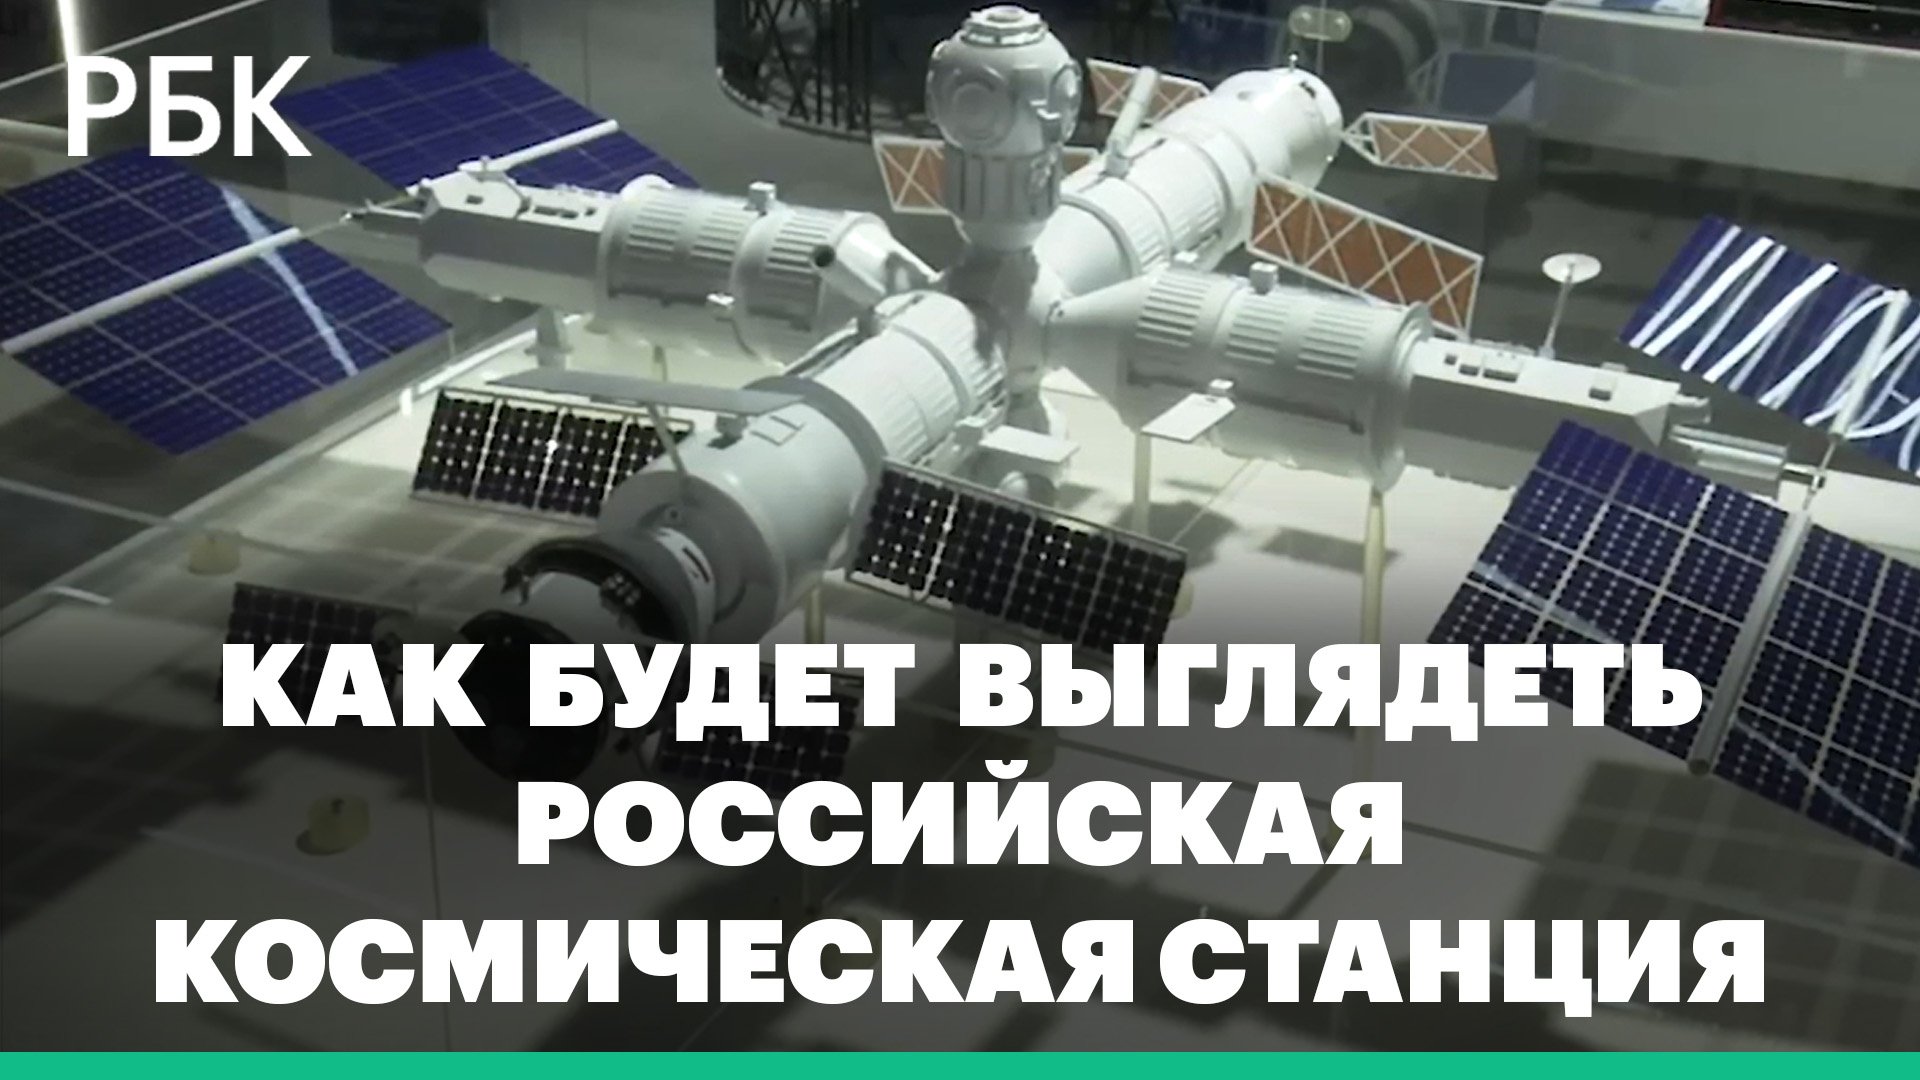 Что известно о новой российской орбитальной станции. Что будет вместо МКС